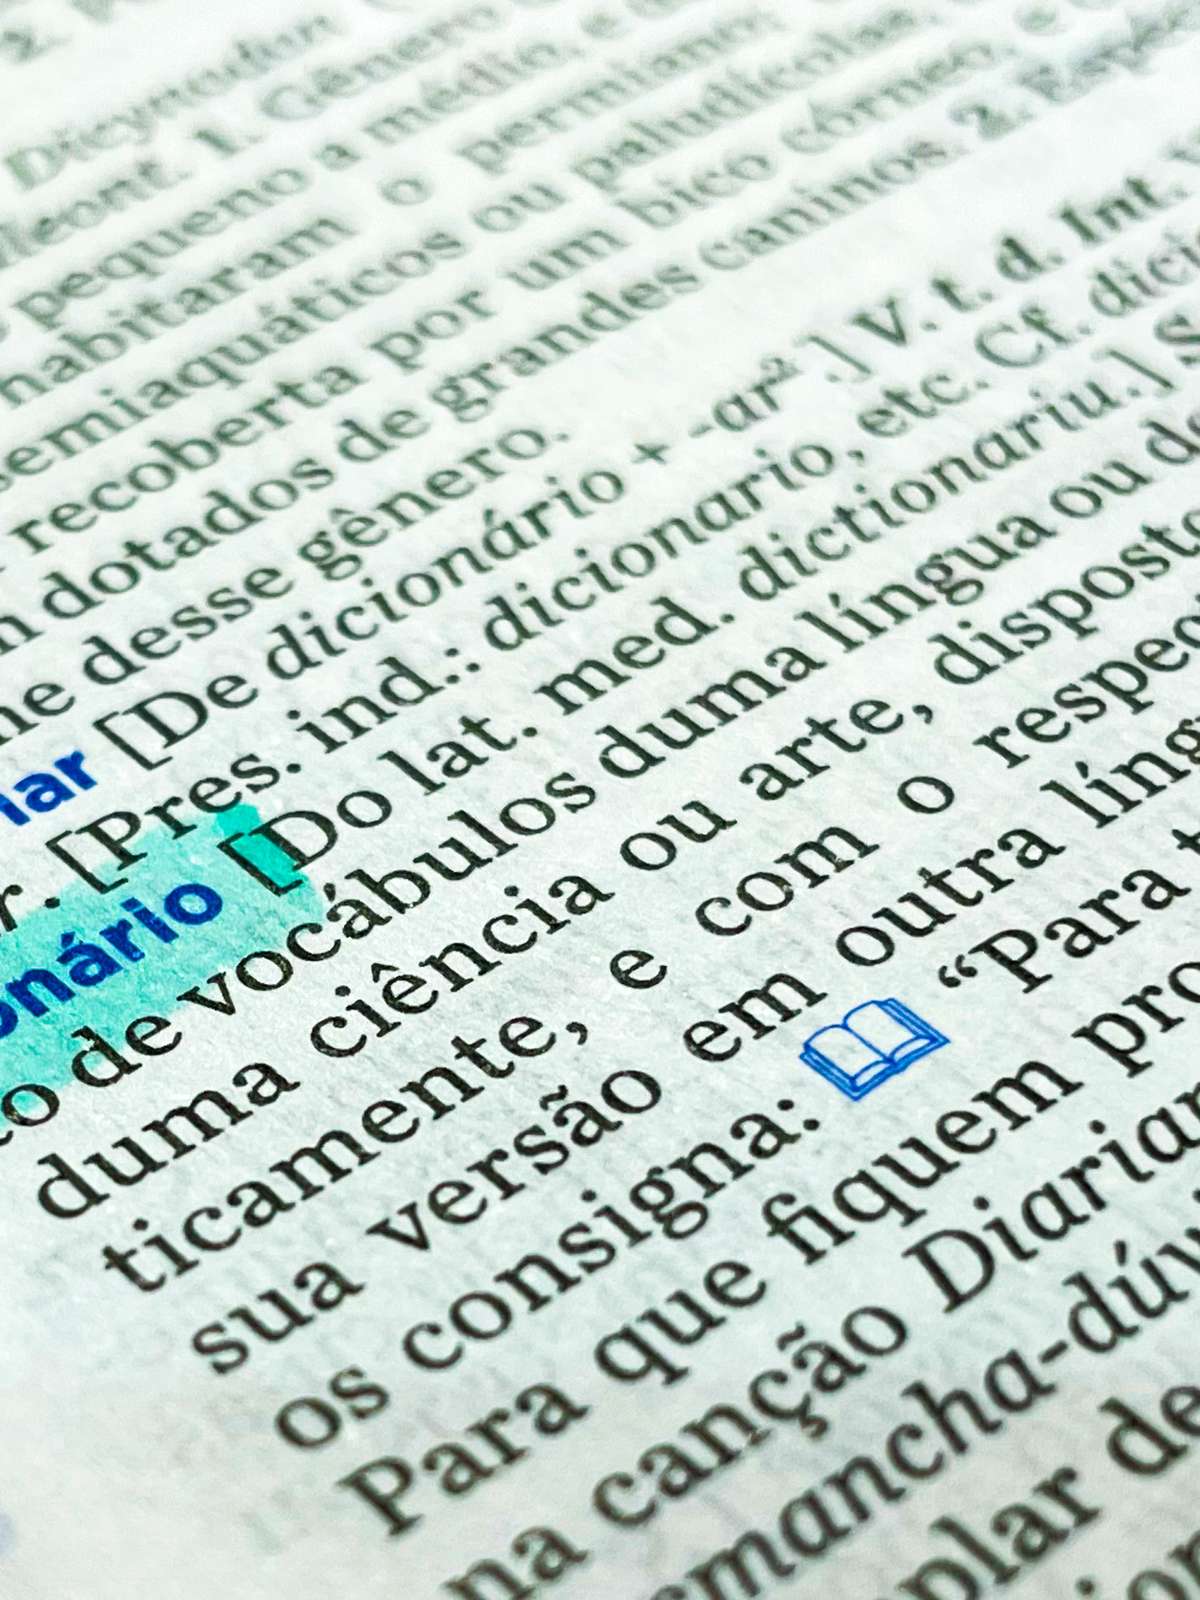 Sessenta-e-um - Dicio, Dicionário Online de Português